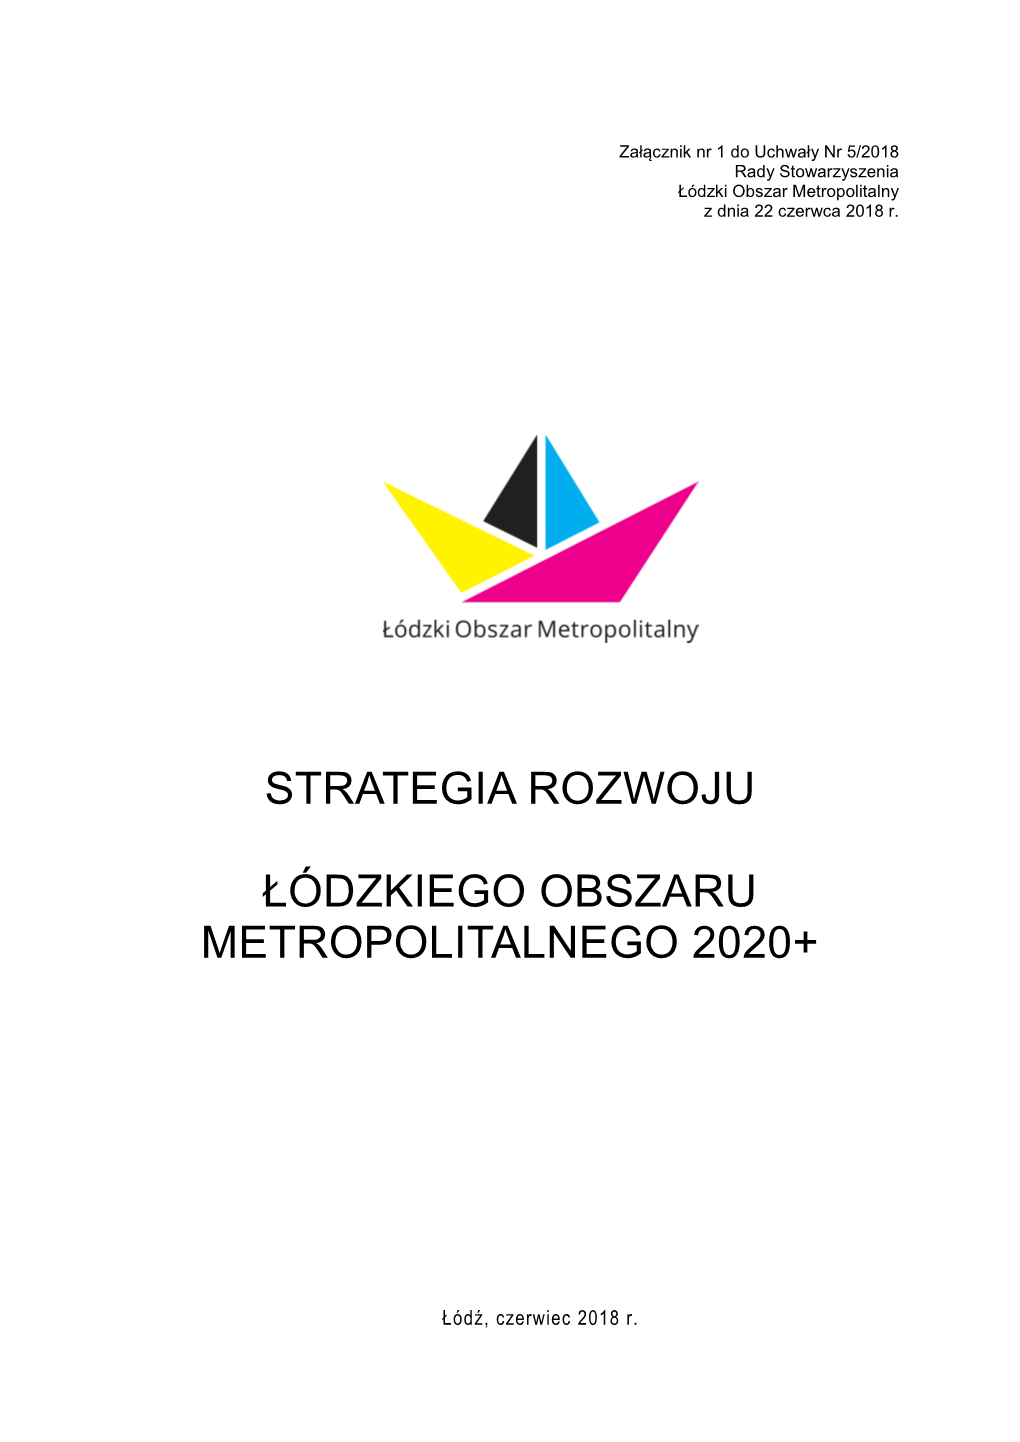 Strategia Rozwoju Łódzkiego Obszaru Metropolitalnego 2020+ Została Przyjęta I Aktualizowana Na Podstawie Niżej Wymienionych Dokumentów